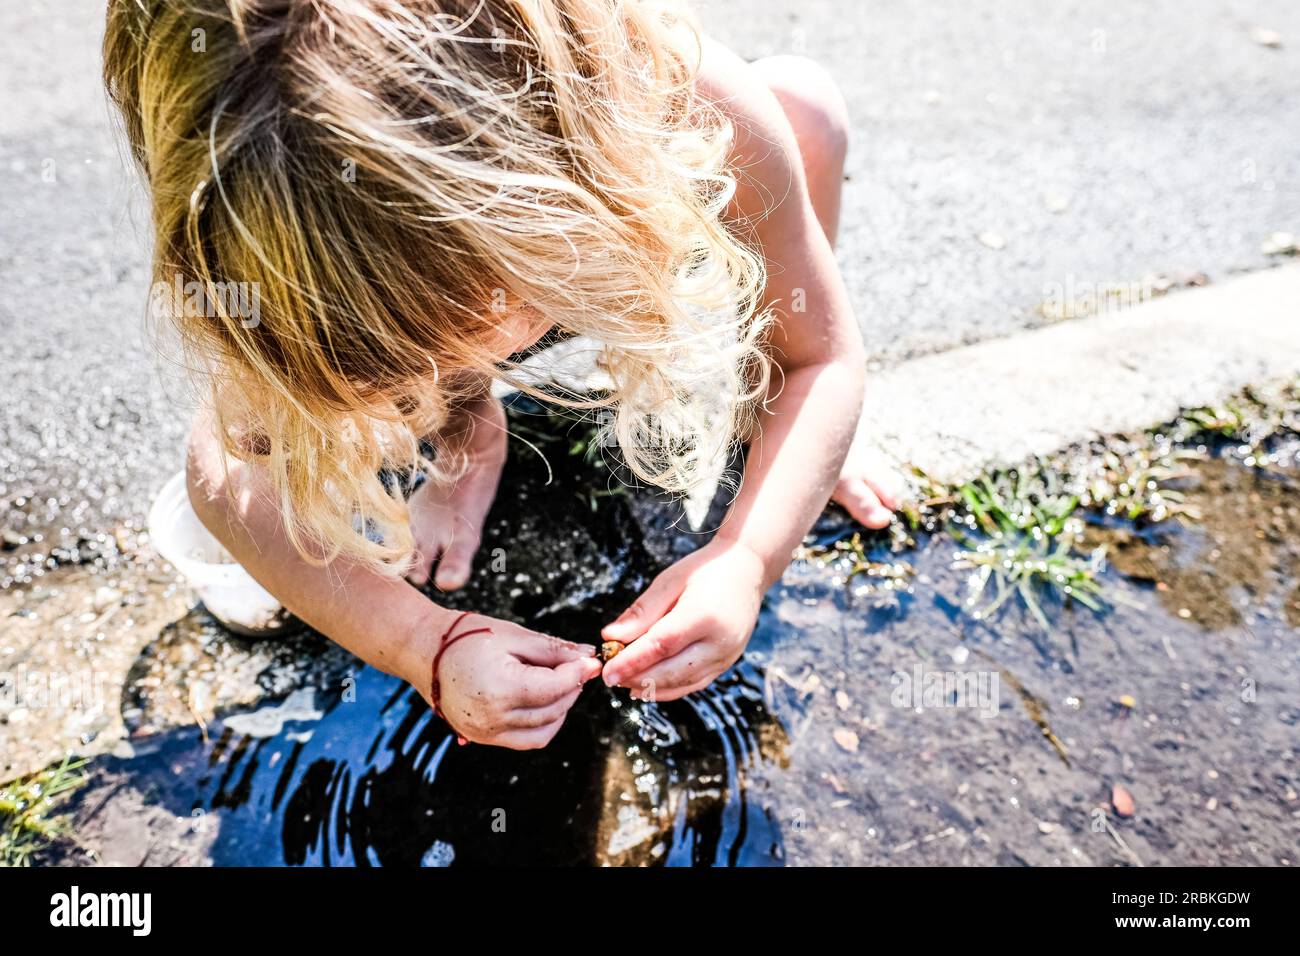 fille jouant dehors dans une flaque d'eau pieds nus dans la lumière du soleil Banque D'Images